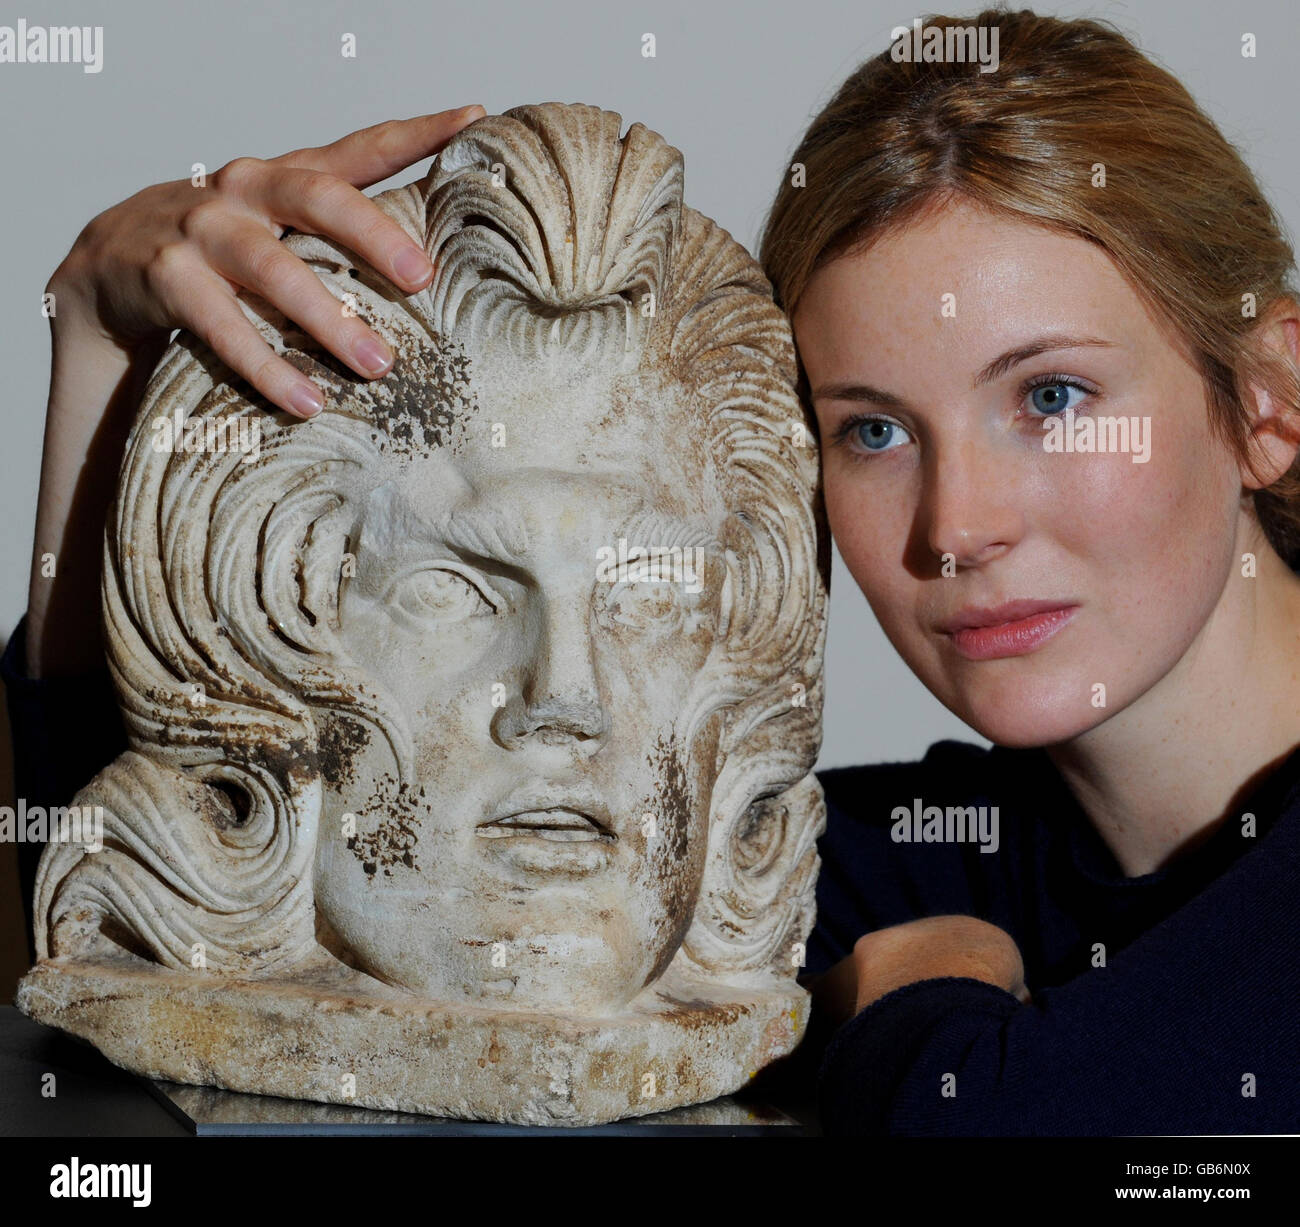 Georgie Aitken de Bonhams avec un acrotérien de marbre romain, une tête sculptée d'un coin de sarcophage qui a été comparé à Elvis Presley, qui sera mise aux enchères à Bonhams le 15 octobre. Banque D'Images